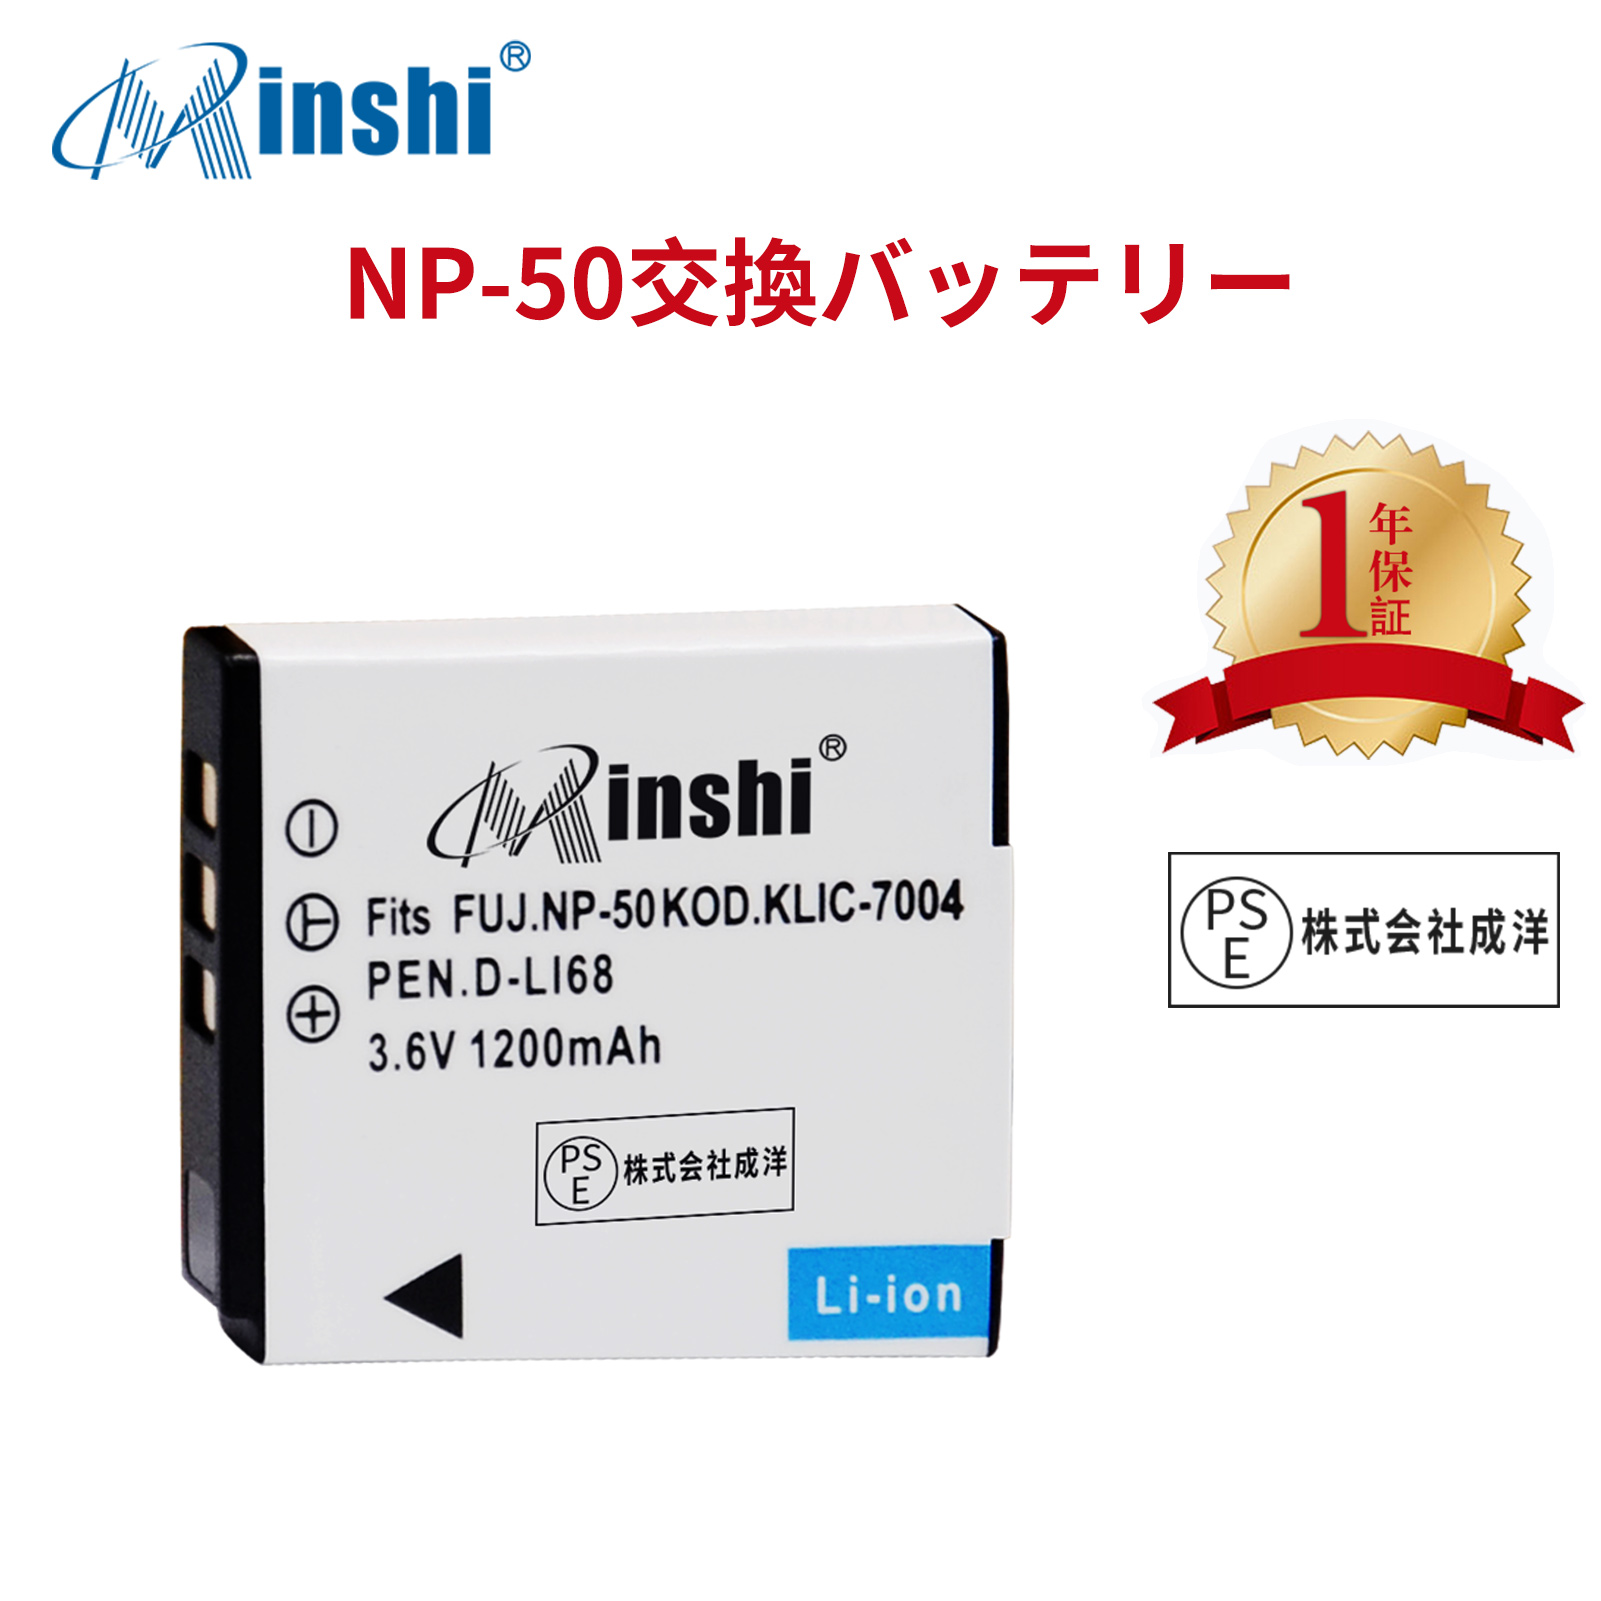 【1年保証】 minshi FUJIFILM FinePix F800EXR 対応 NP-50  1200mAh  高品質交換用バッテリー